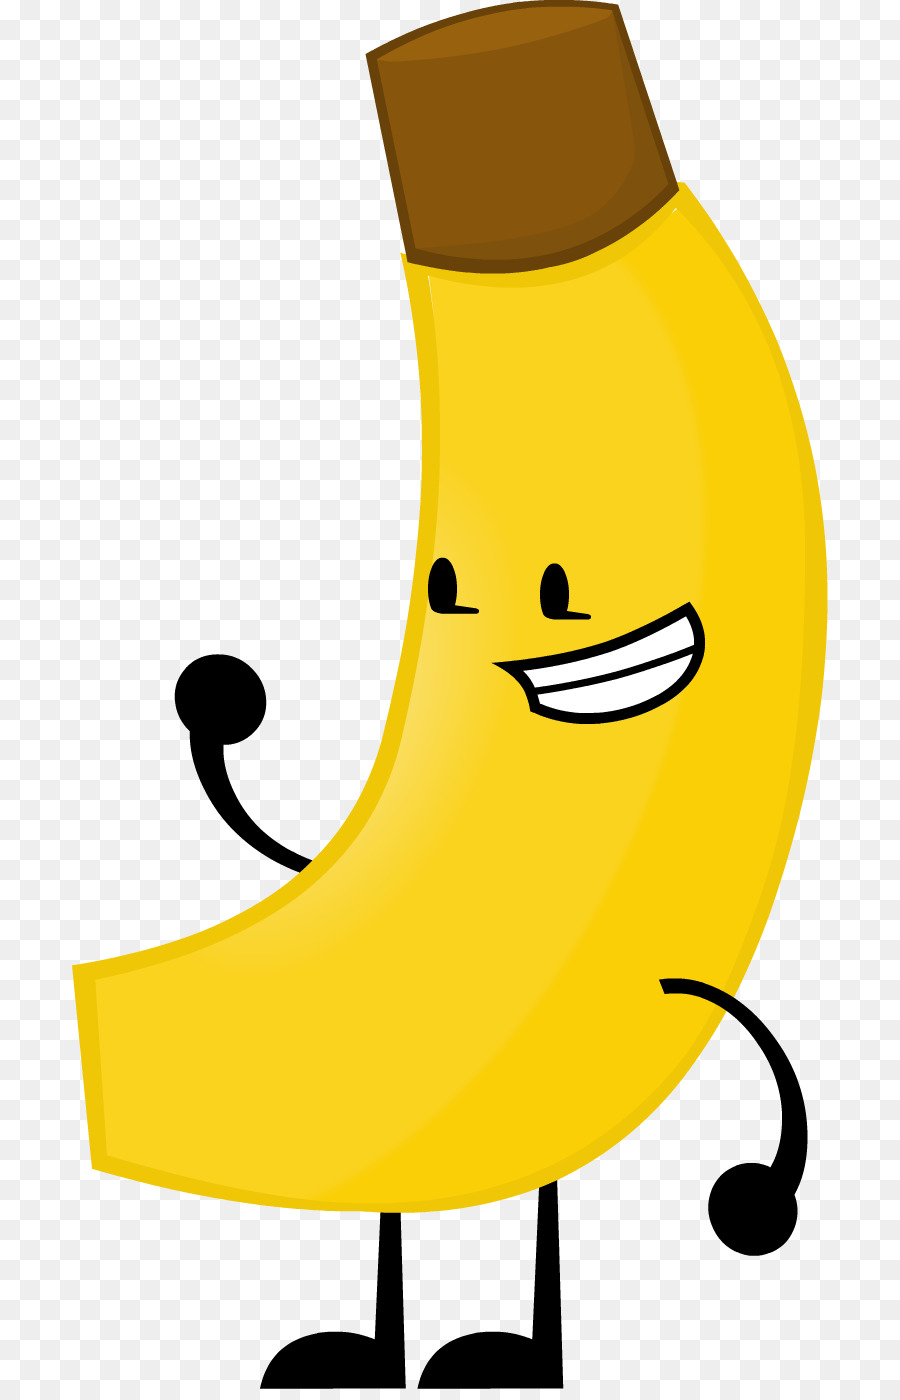 Banana，La Fruta PNG